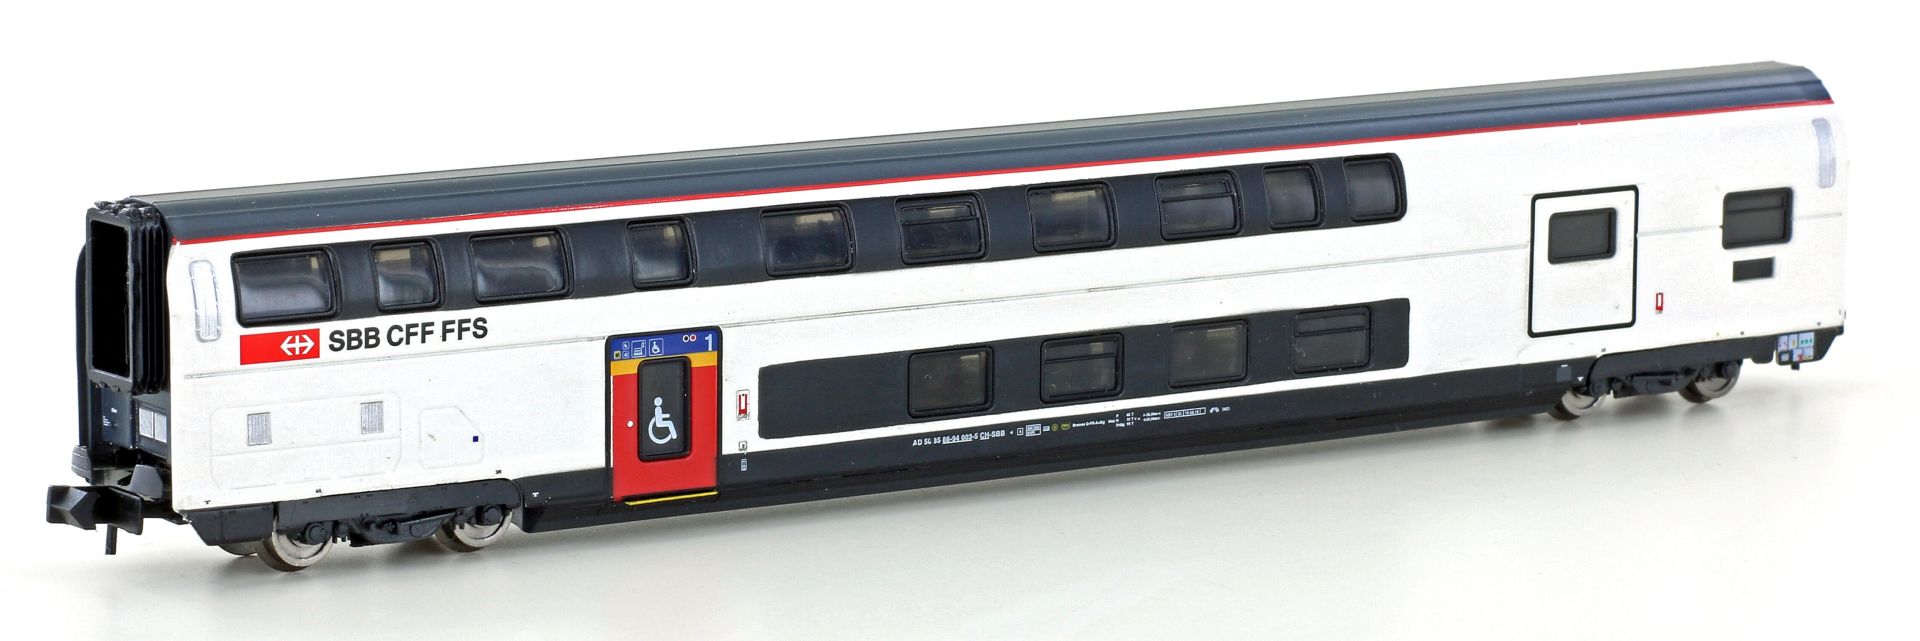 Hobbytrain H25122 - Doppelstockwagen IC2020 1. Klasse/Gepäck, SBB, Ep.VI